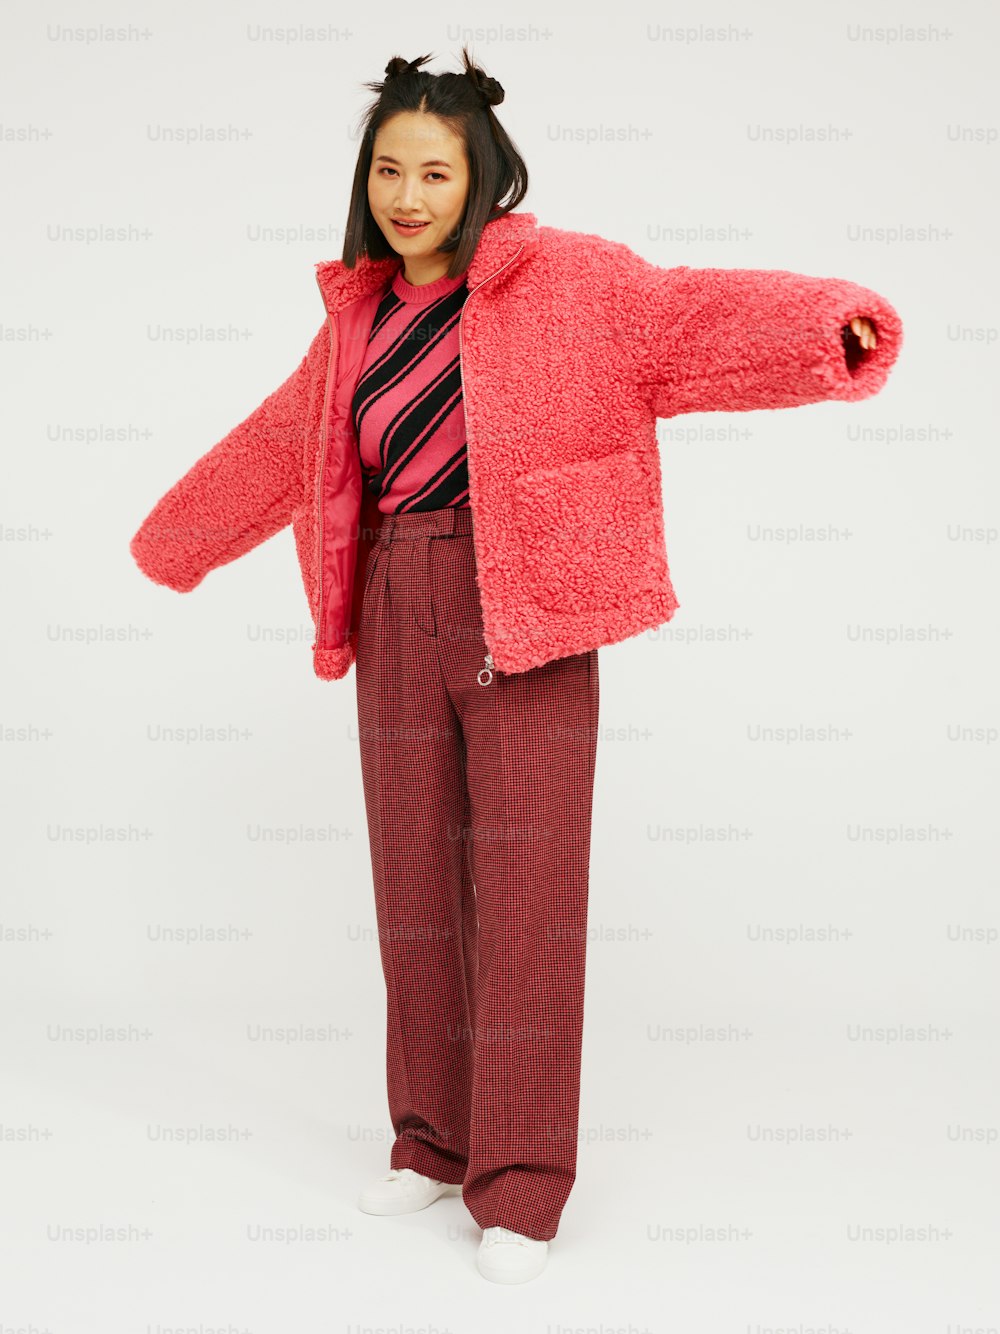 분홍색 재킷과 빨간 바지를 입은 여자